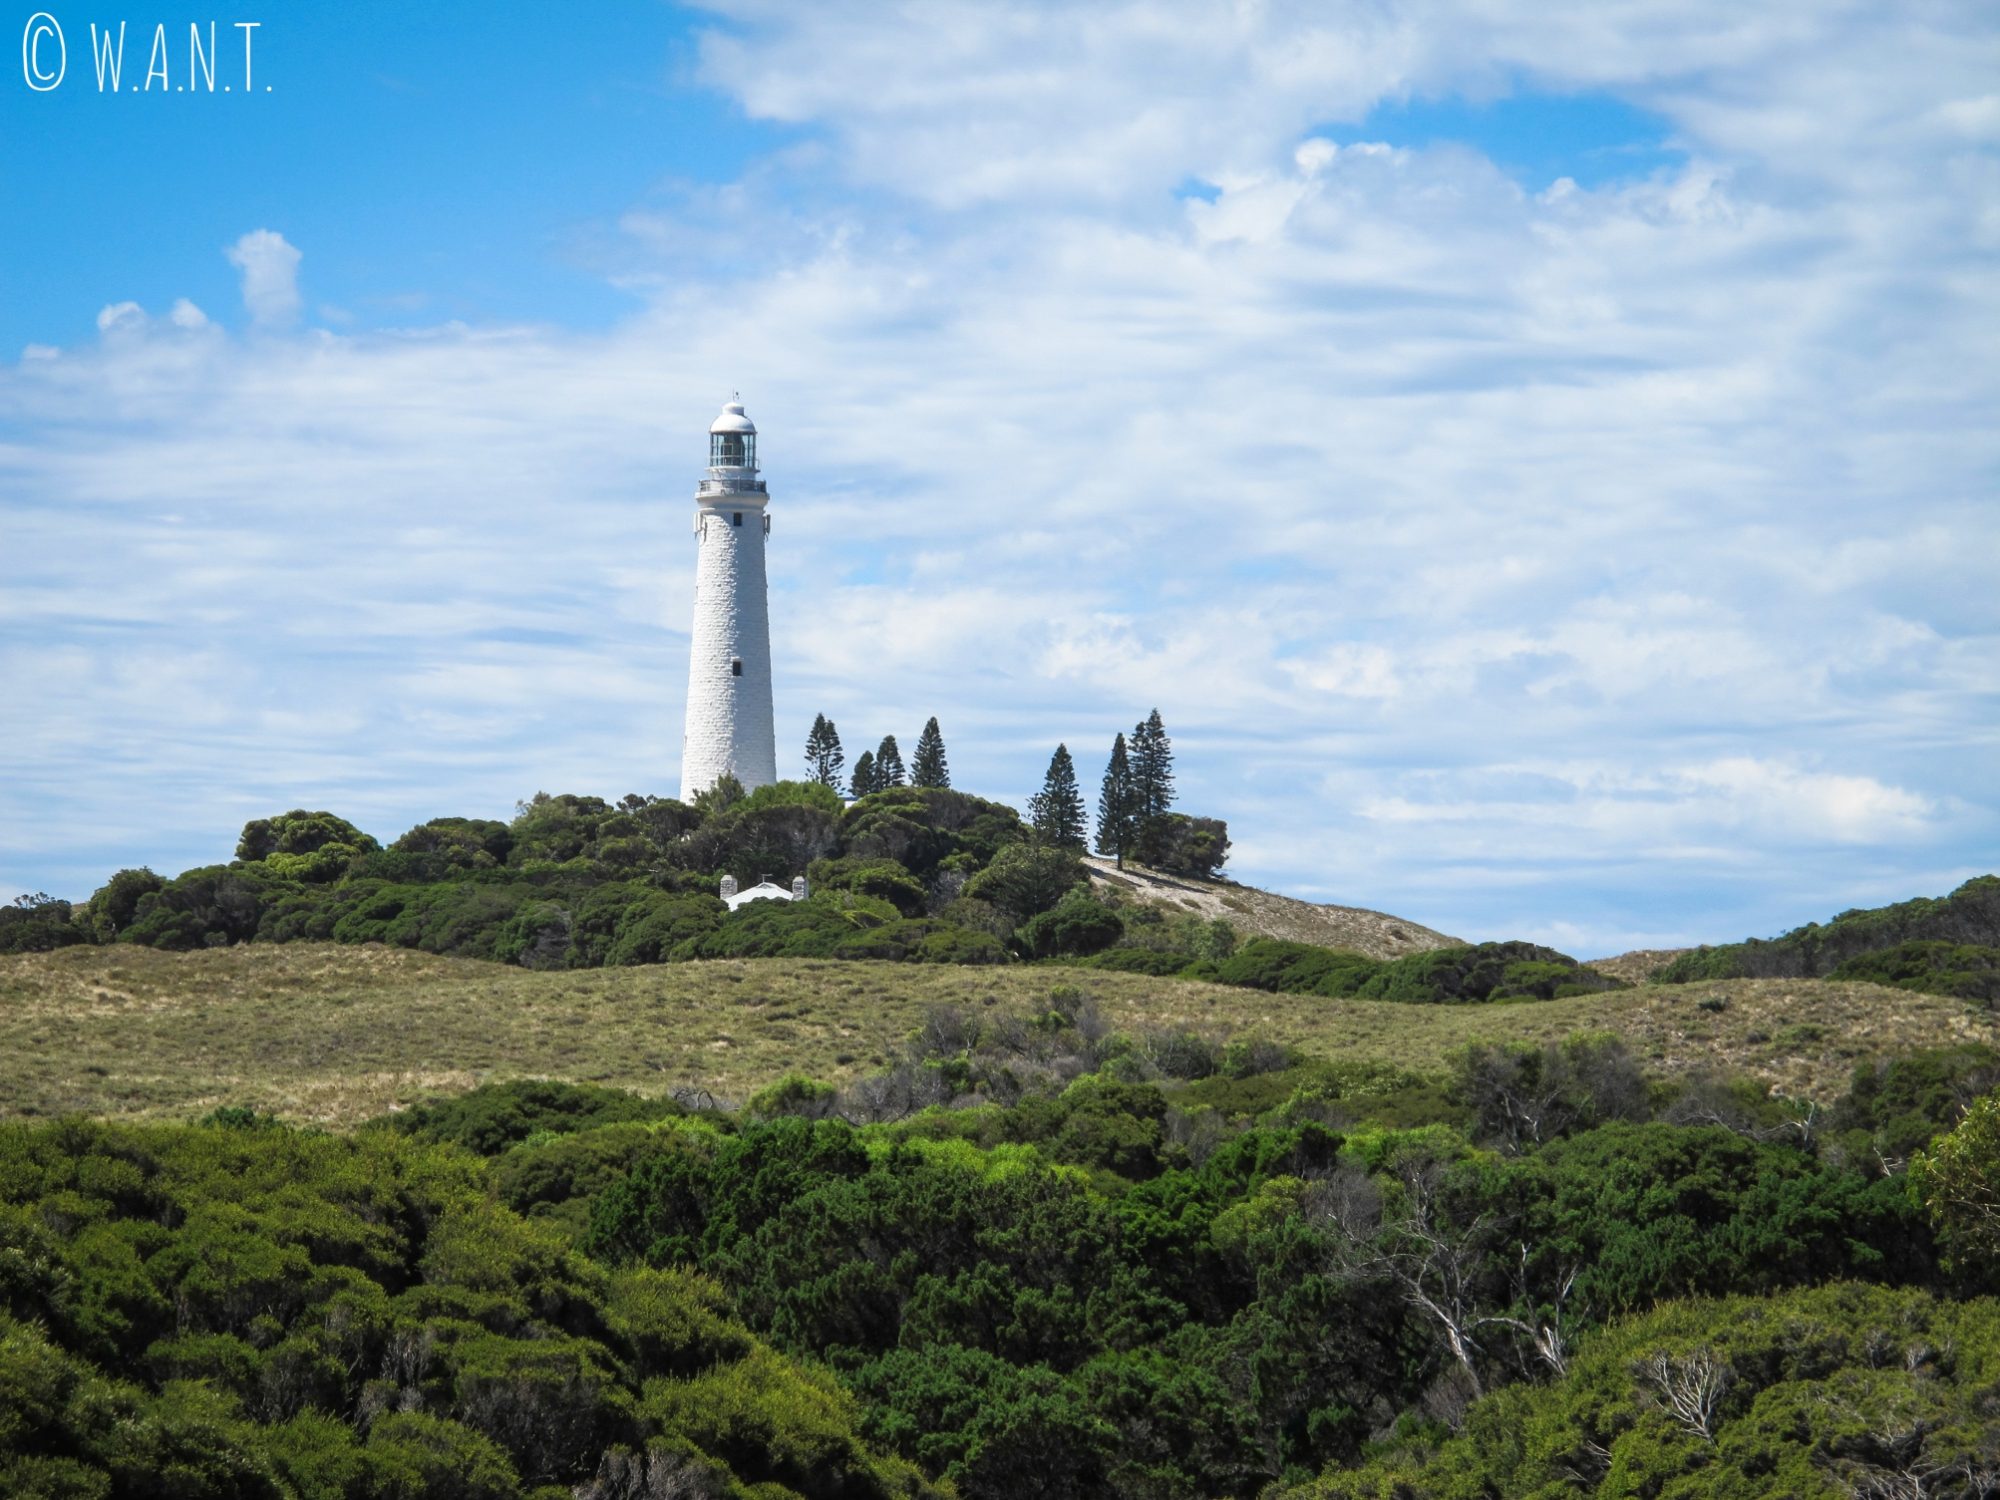 Le phare de Rottnest Island domine l'île